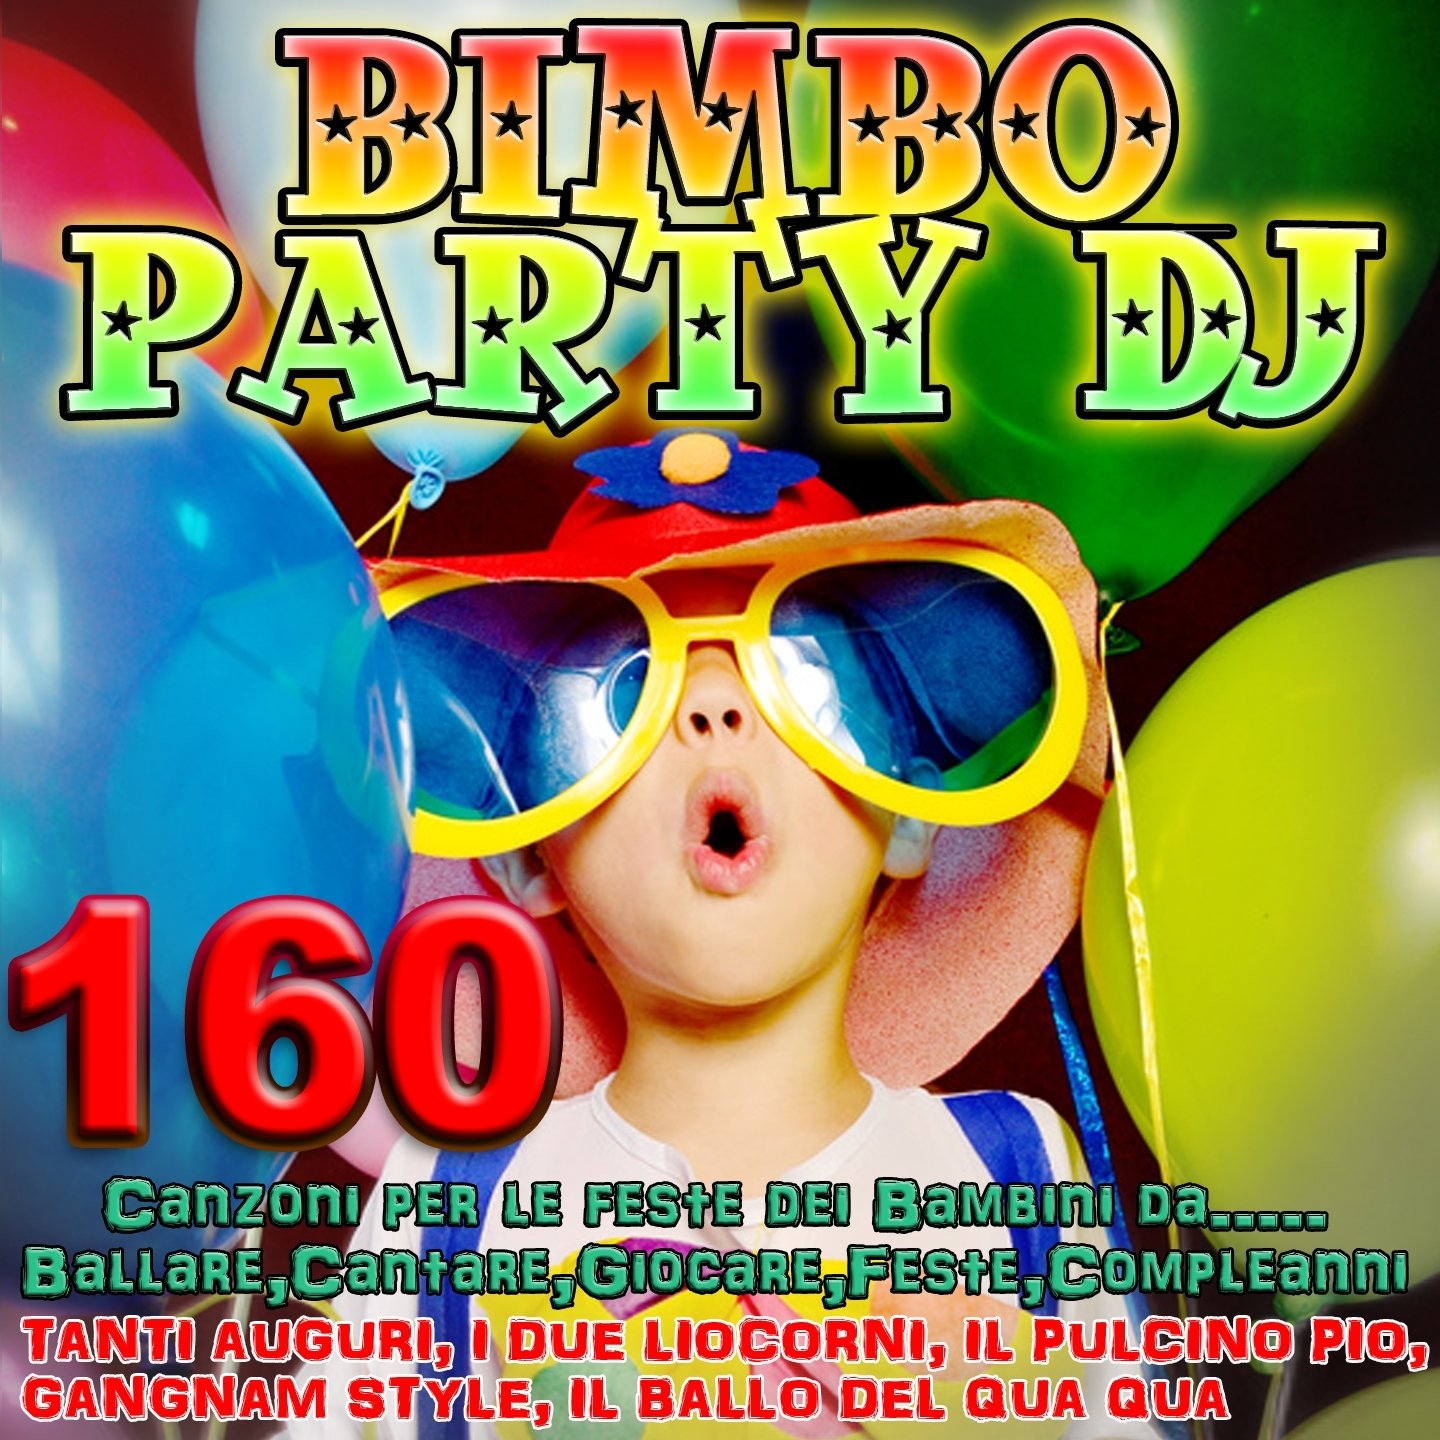 Bimbo Party DJ (160 Canzoni per le feste dei bambini da...ballare, cantare,  giocare, feste, compleanni. Tanti auguri,Il pulcino Pio, Gangnam Style, Il  ballo del qua qua, I due liocorni) — Various Artists